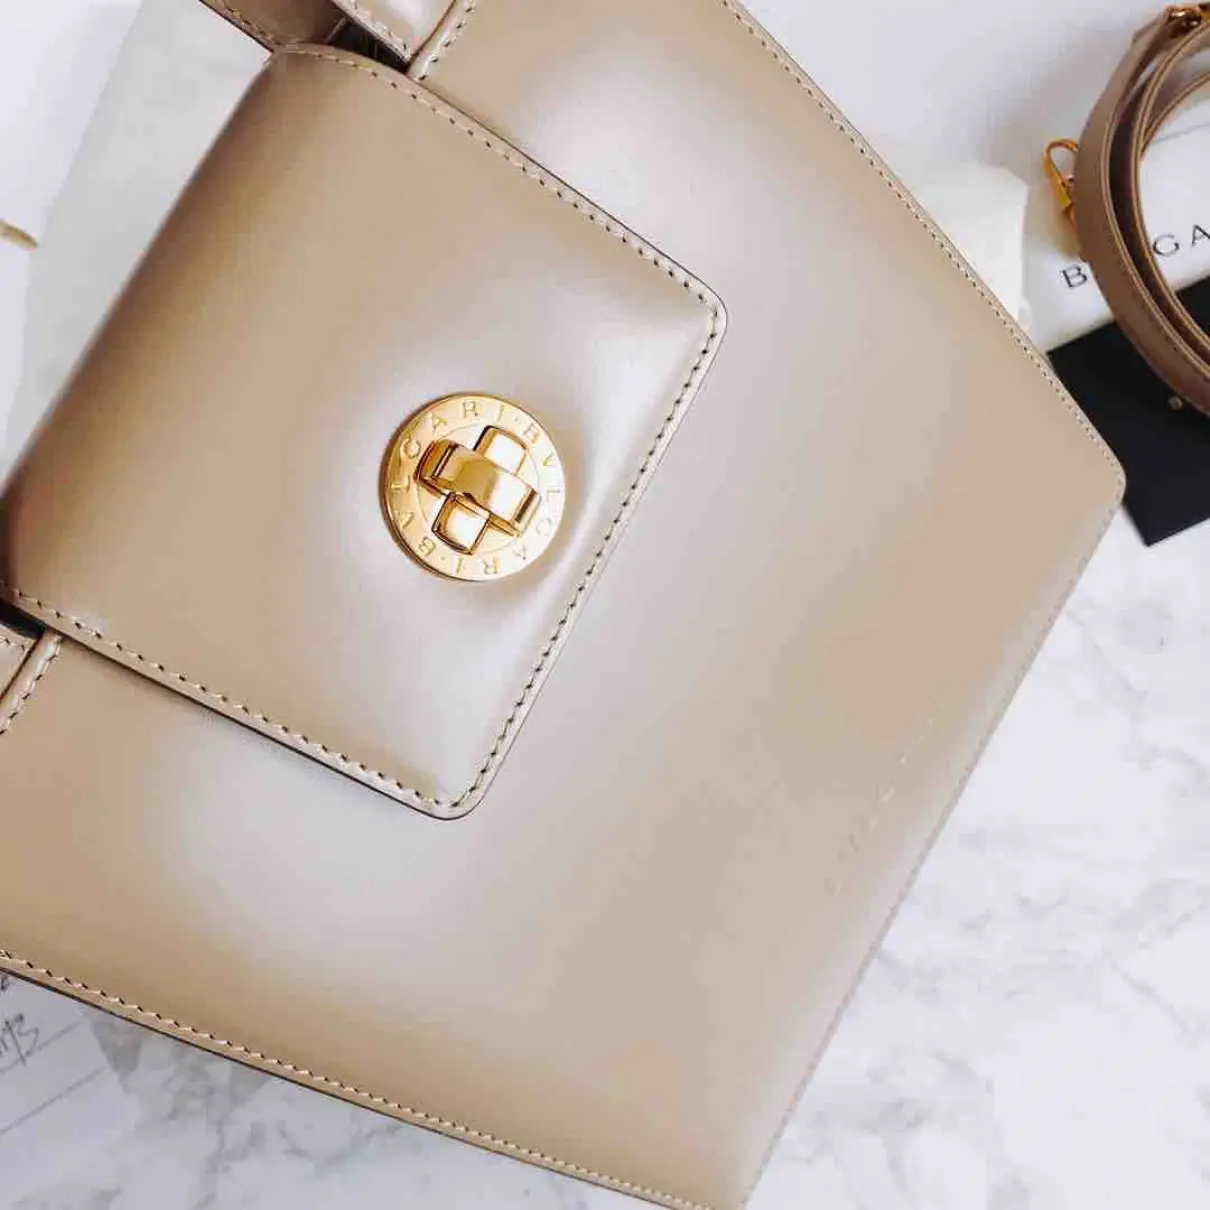 Bvlgari Leather handbag for sale